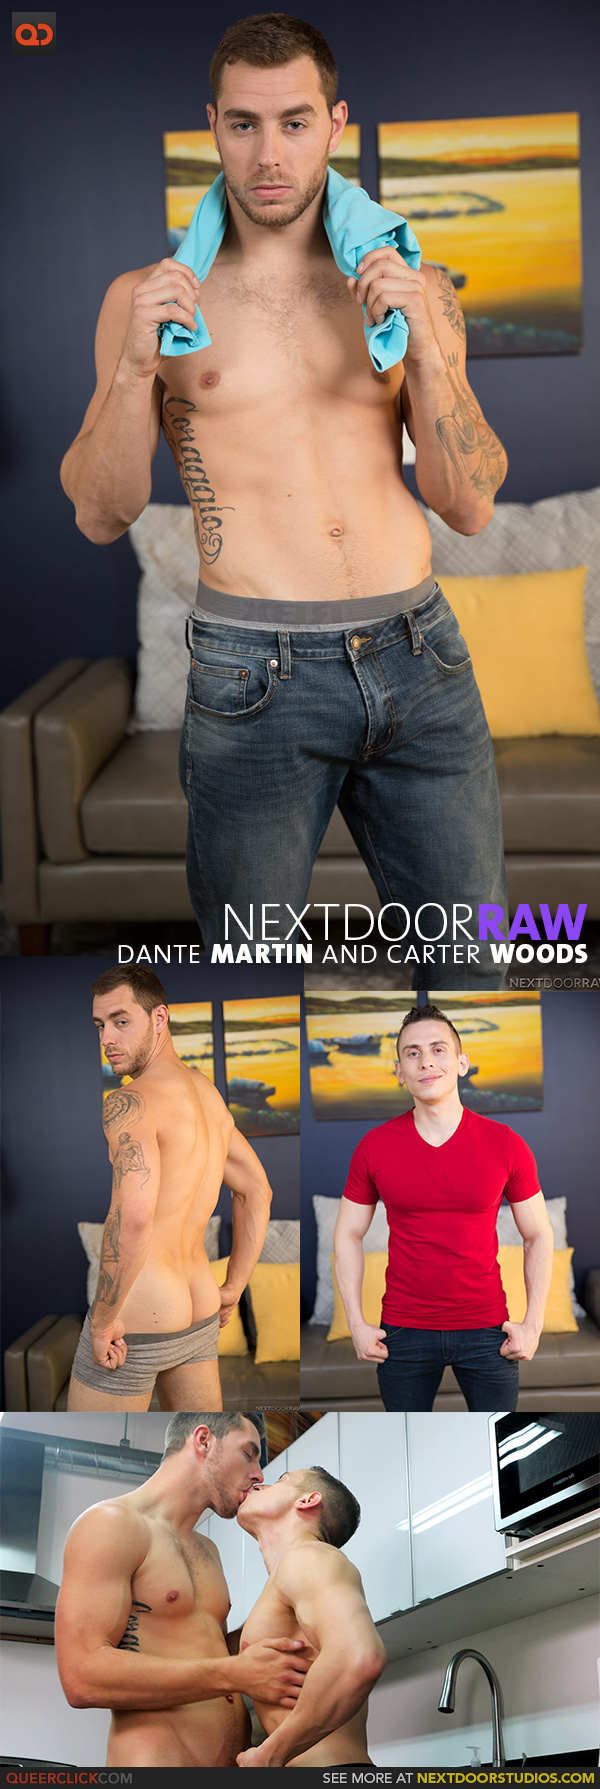 Next Door Studios:  Dante Martin and Carter Woods